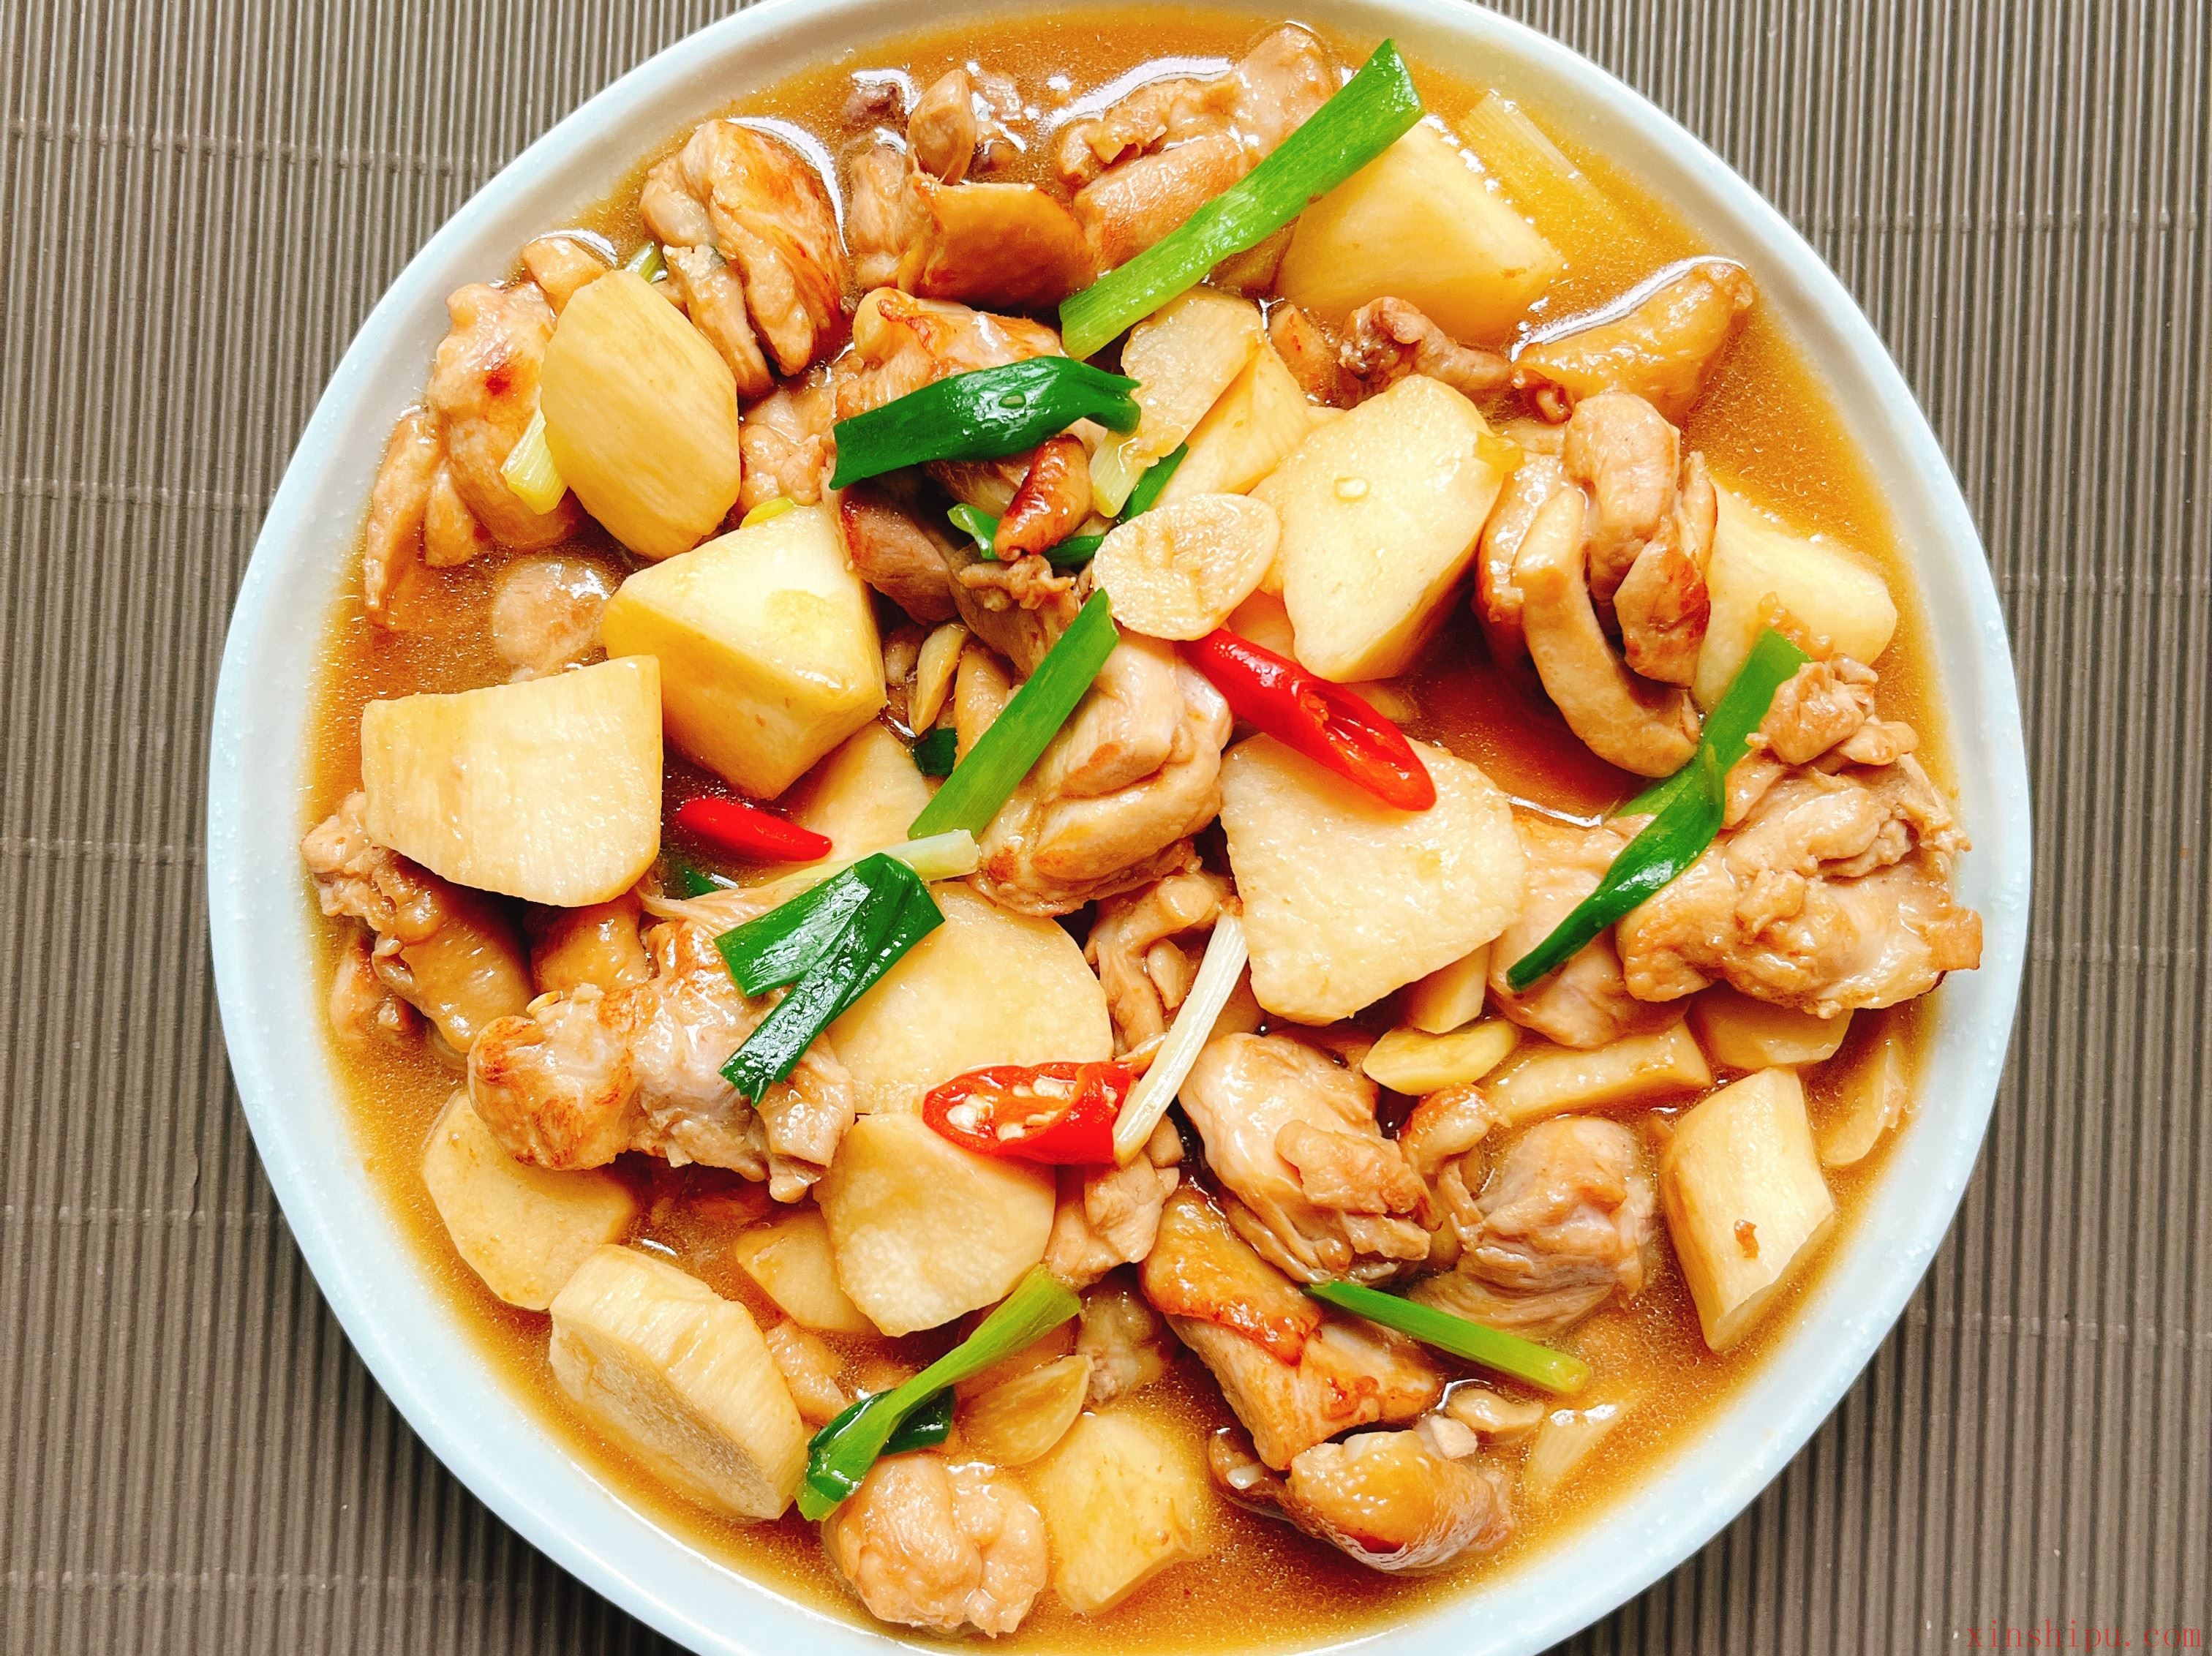 胡萝卜炖乌鸡汤,胡萝卜炖乌鸡汤的家常做法 - 美食杰胡萝卜炖乌鸡汤做法大全